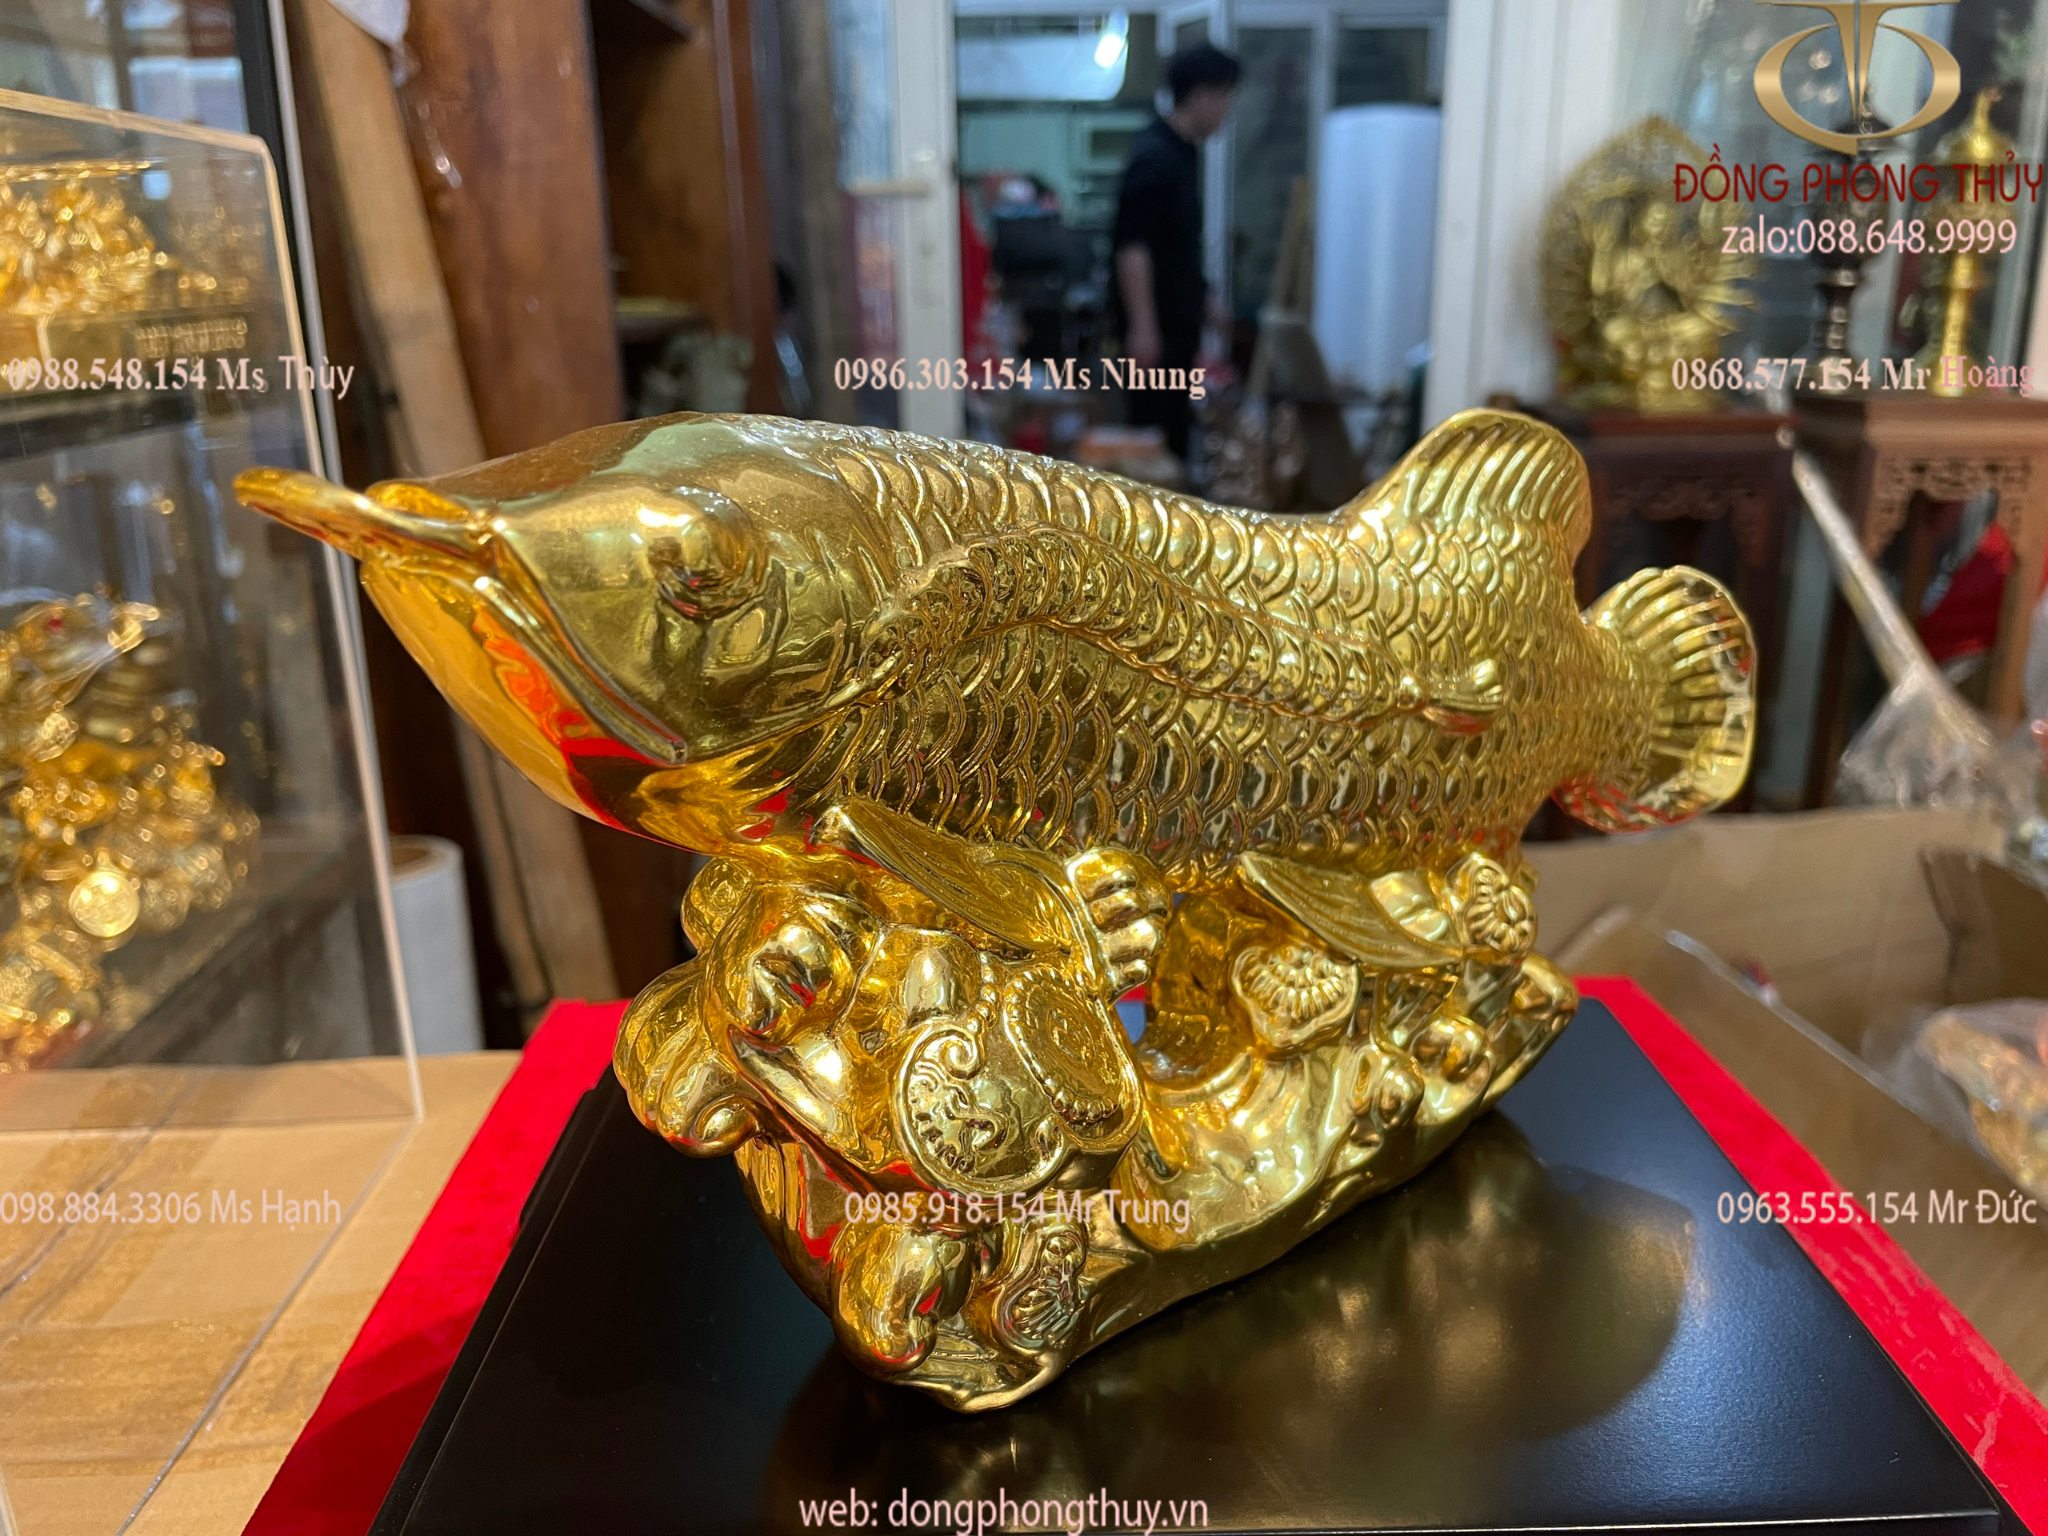 Quà tặng: Tượng cá rồng phong thủy bằng đồng dát vàng 24k